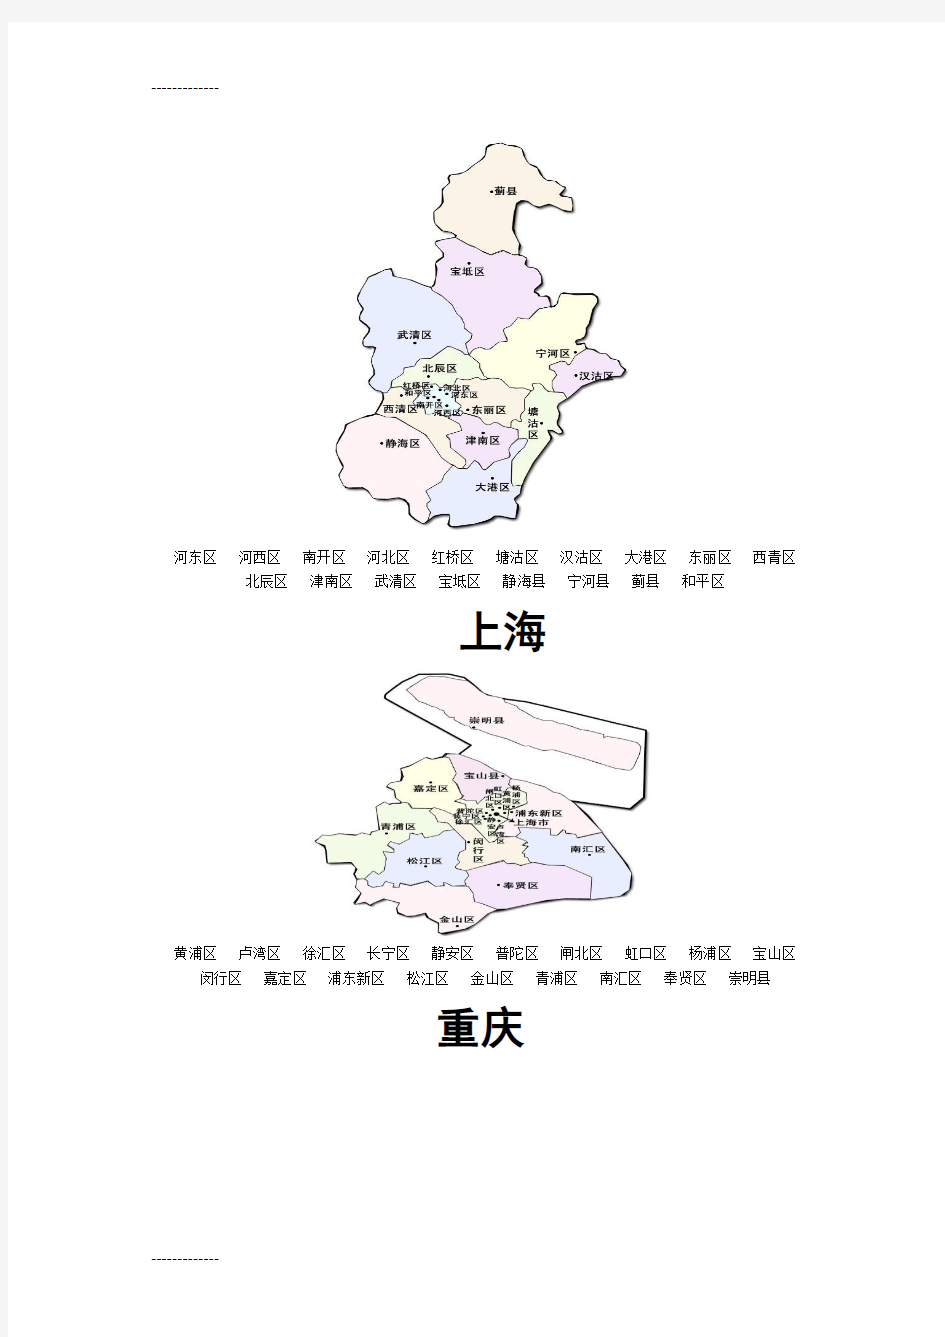 [整理]中国各省区划分(每个省区详细地图)(图中各省份的每个市也都有标注)(地图下面有这些市的文字).